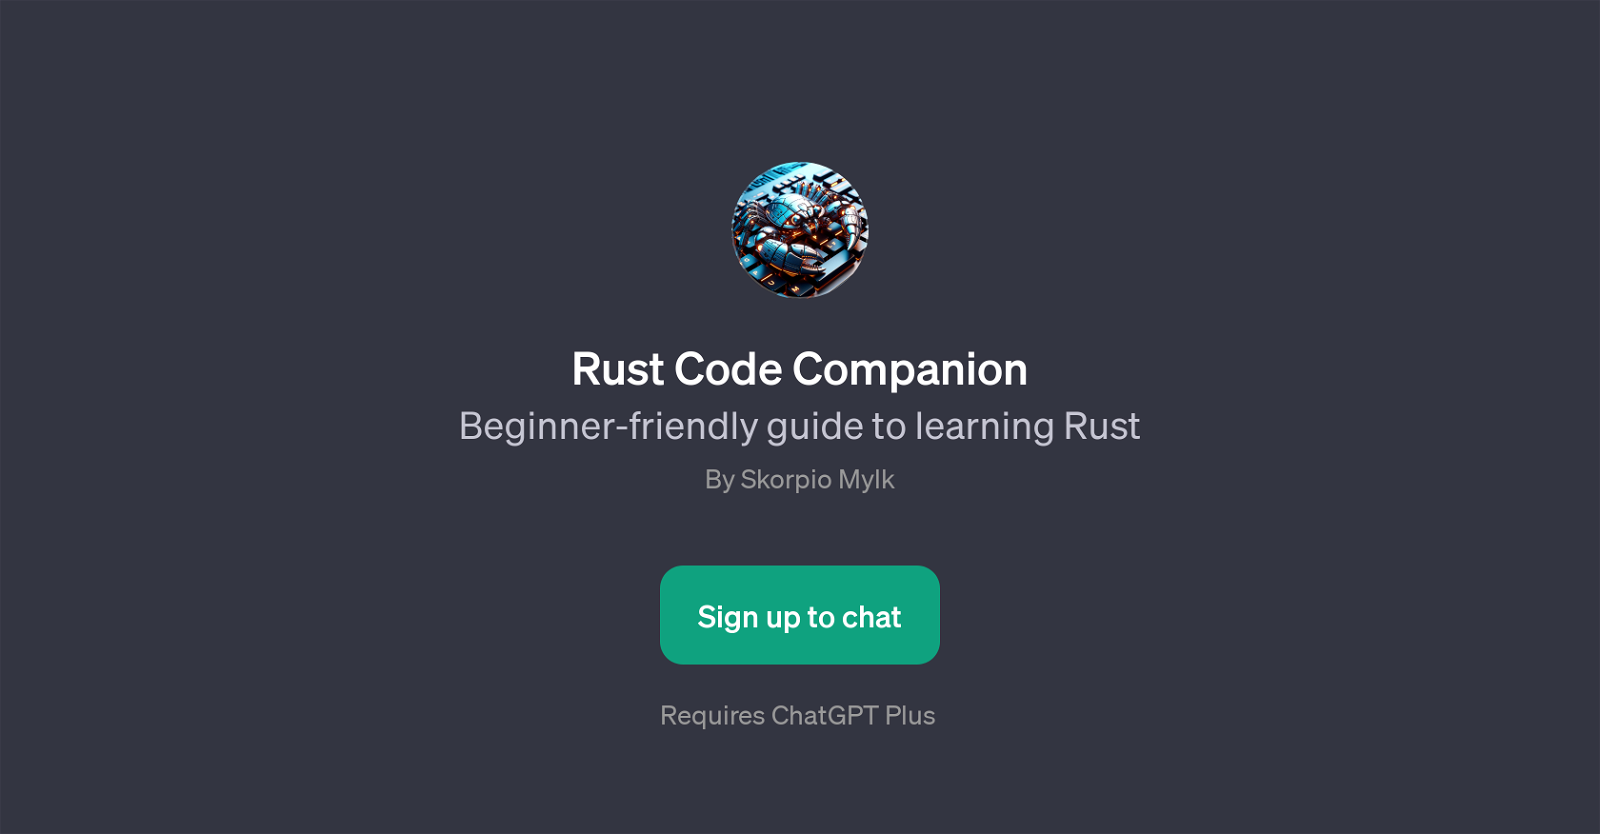 Rust Code Companion website